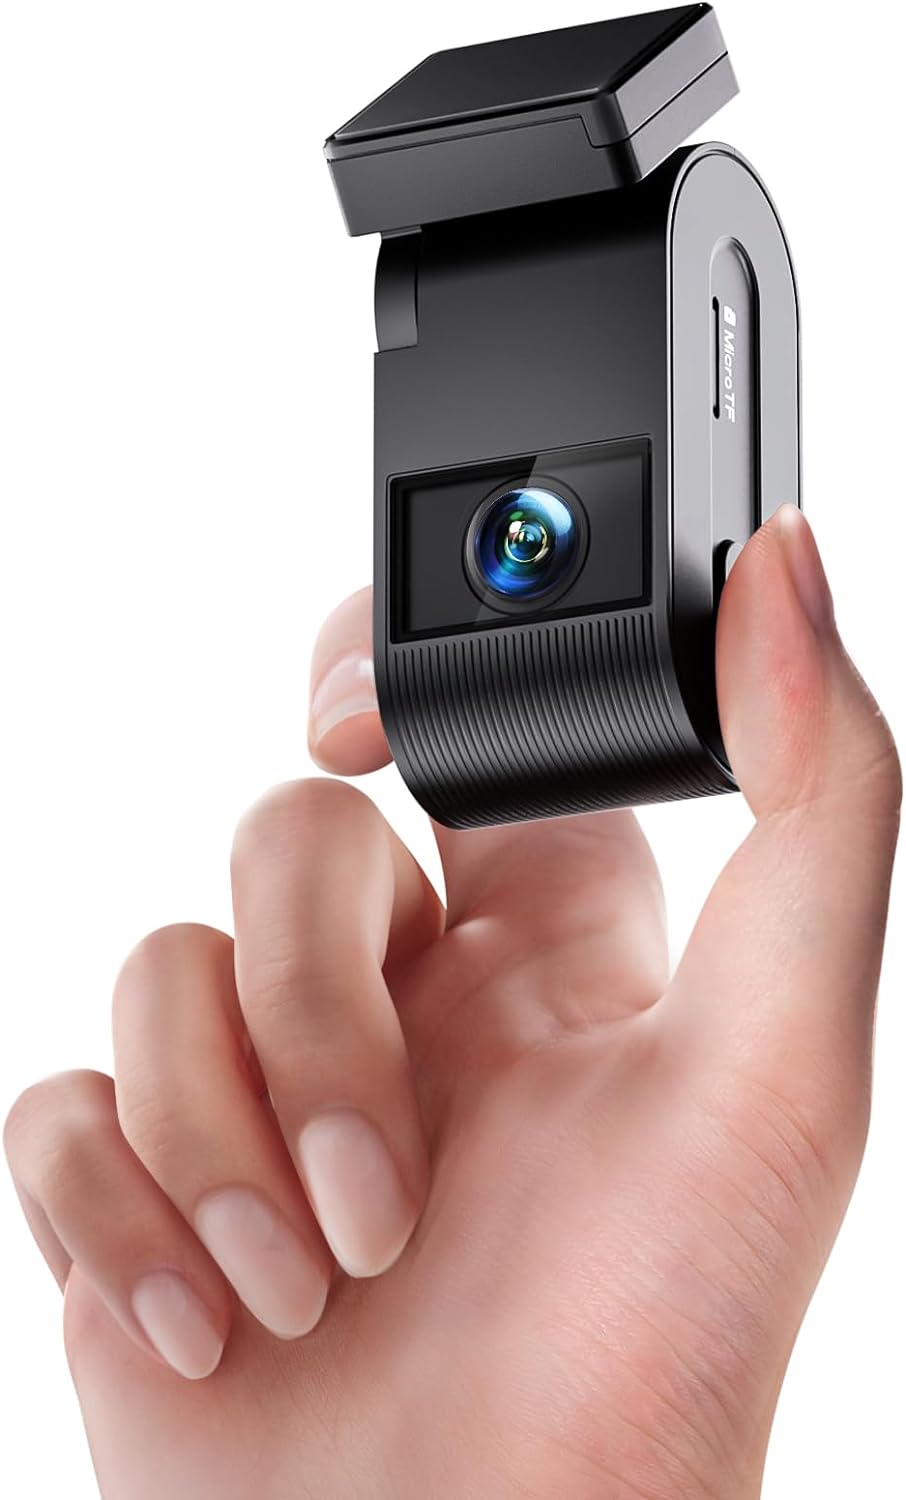 *New* VIOFO VS1 Mini Dash Cam with FREE 32GB microSD card $99.99